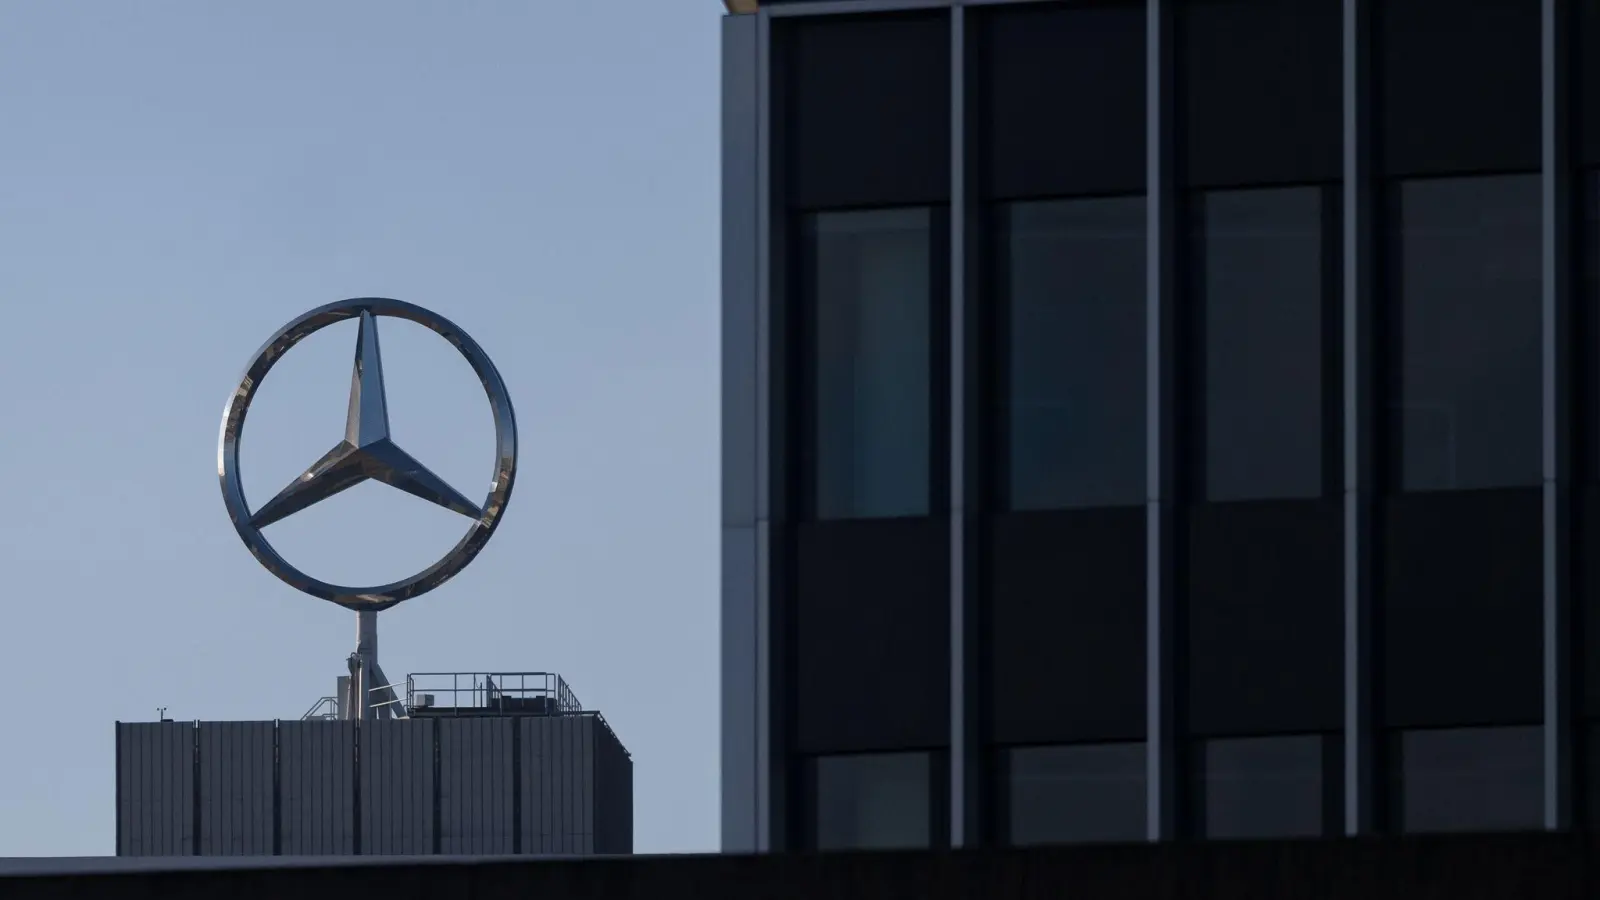 Der Mercedes-Stern ist auf einem Gebäude des Mercedes-Benz Werks in Untertürkheim zu sehen. (Foto: Marijan Murat/dpa)